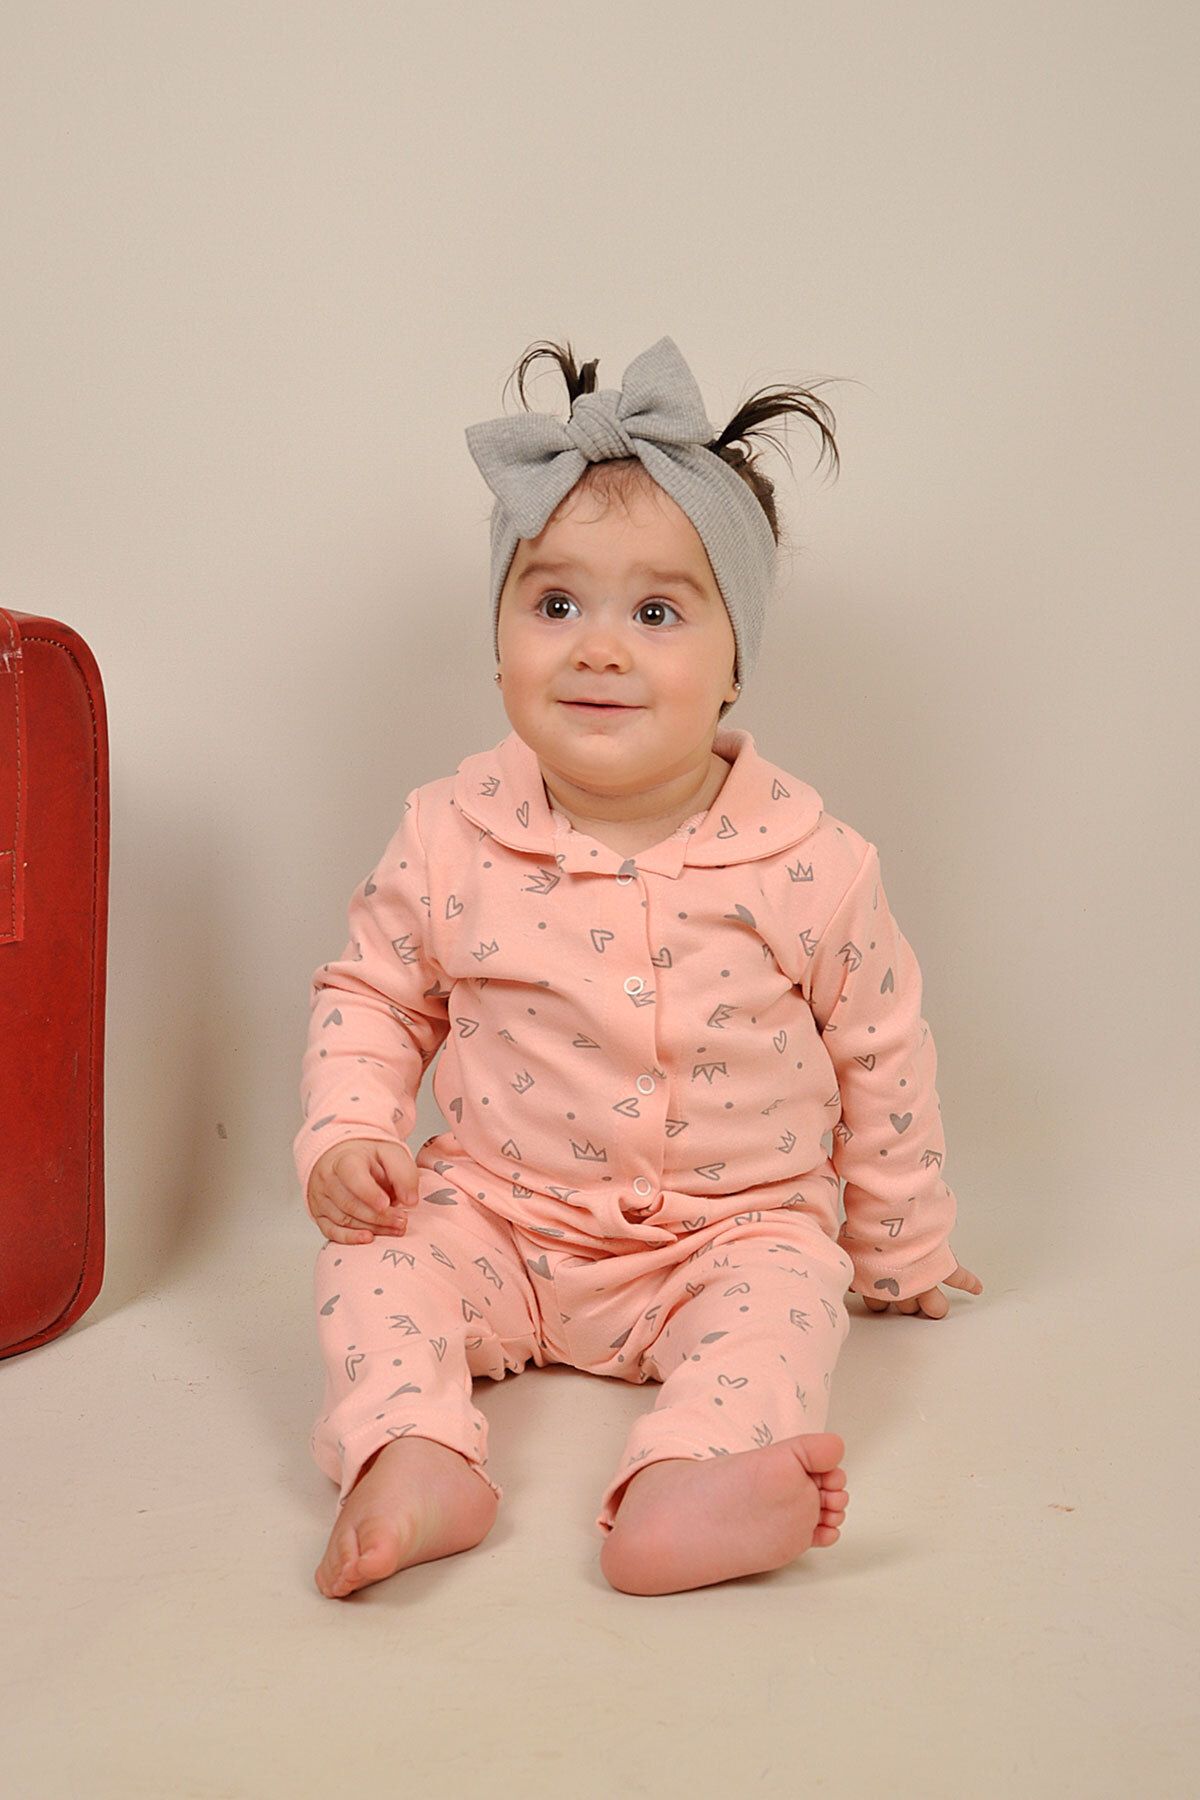 Peki Çocuk 5 Al 4 Öde Bebek Yumusacık Pamuk Kalp Taç Desenli Önden Çitçitli Bebe Yaka Pijama Takim 14474